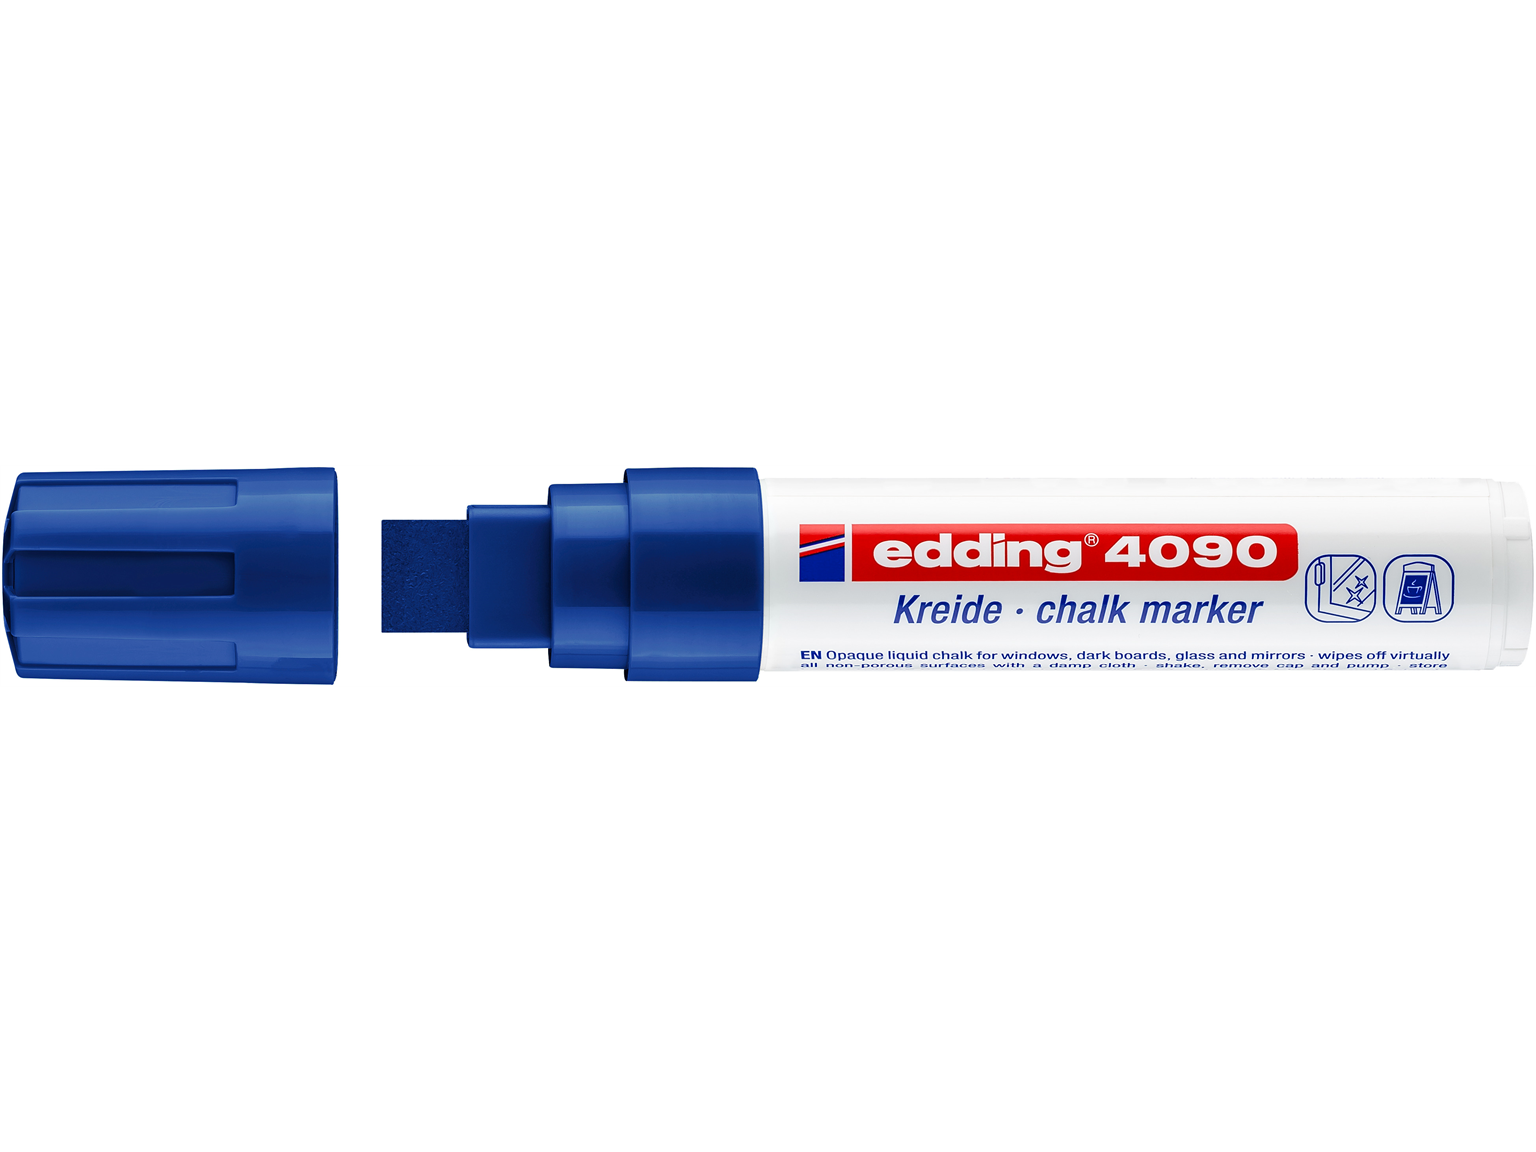 KREIDEMARKER EDDING  edding Kreidemarker 4090 blau